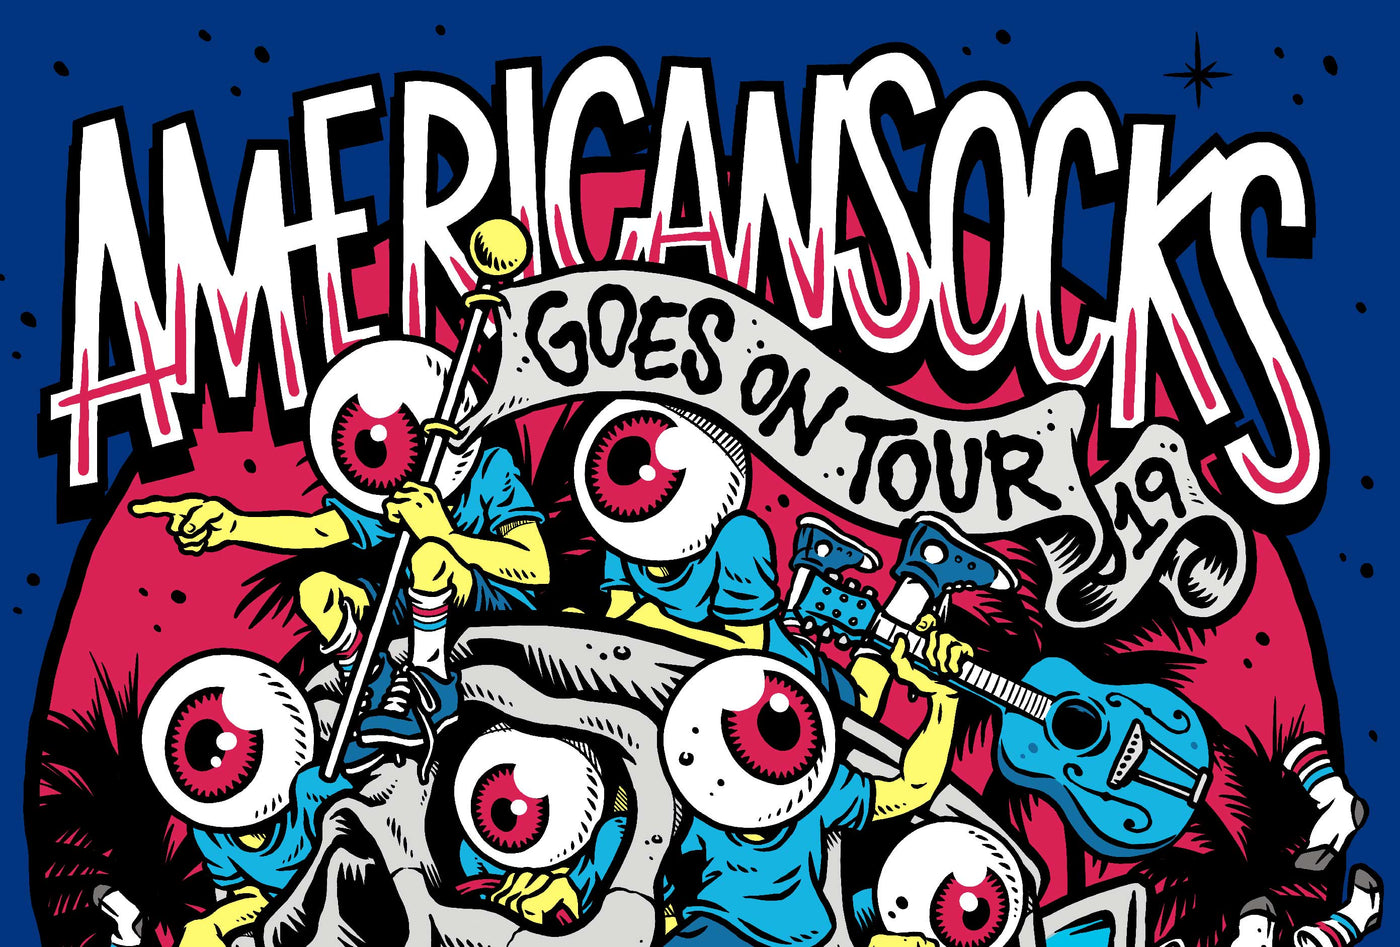 american socks tour blog 2019 on the road festivals